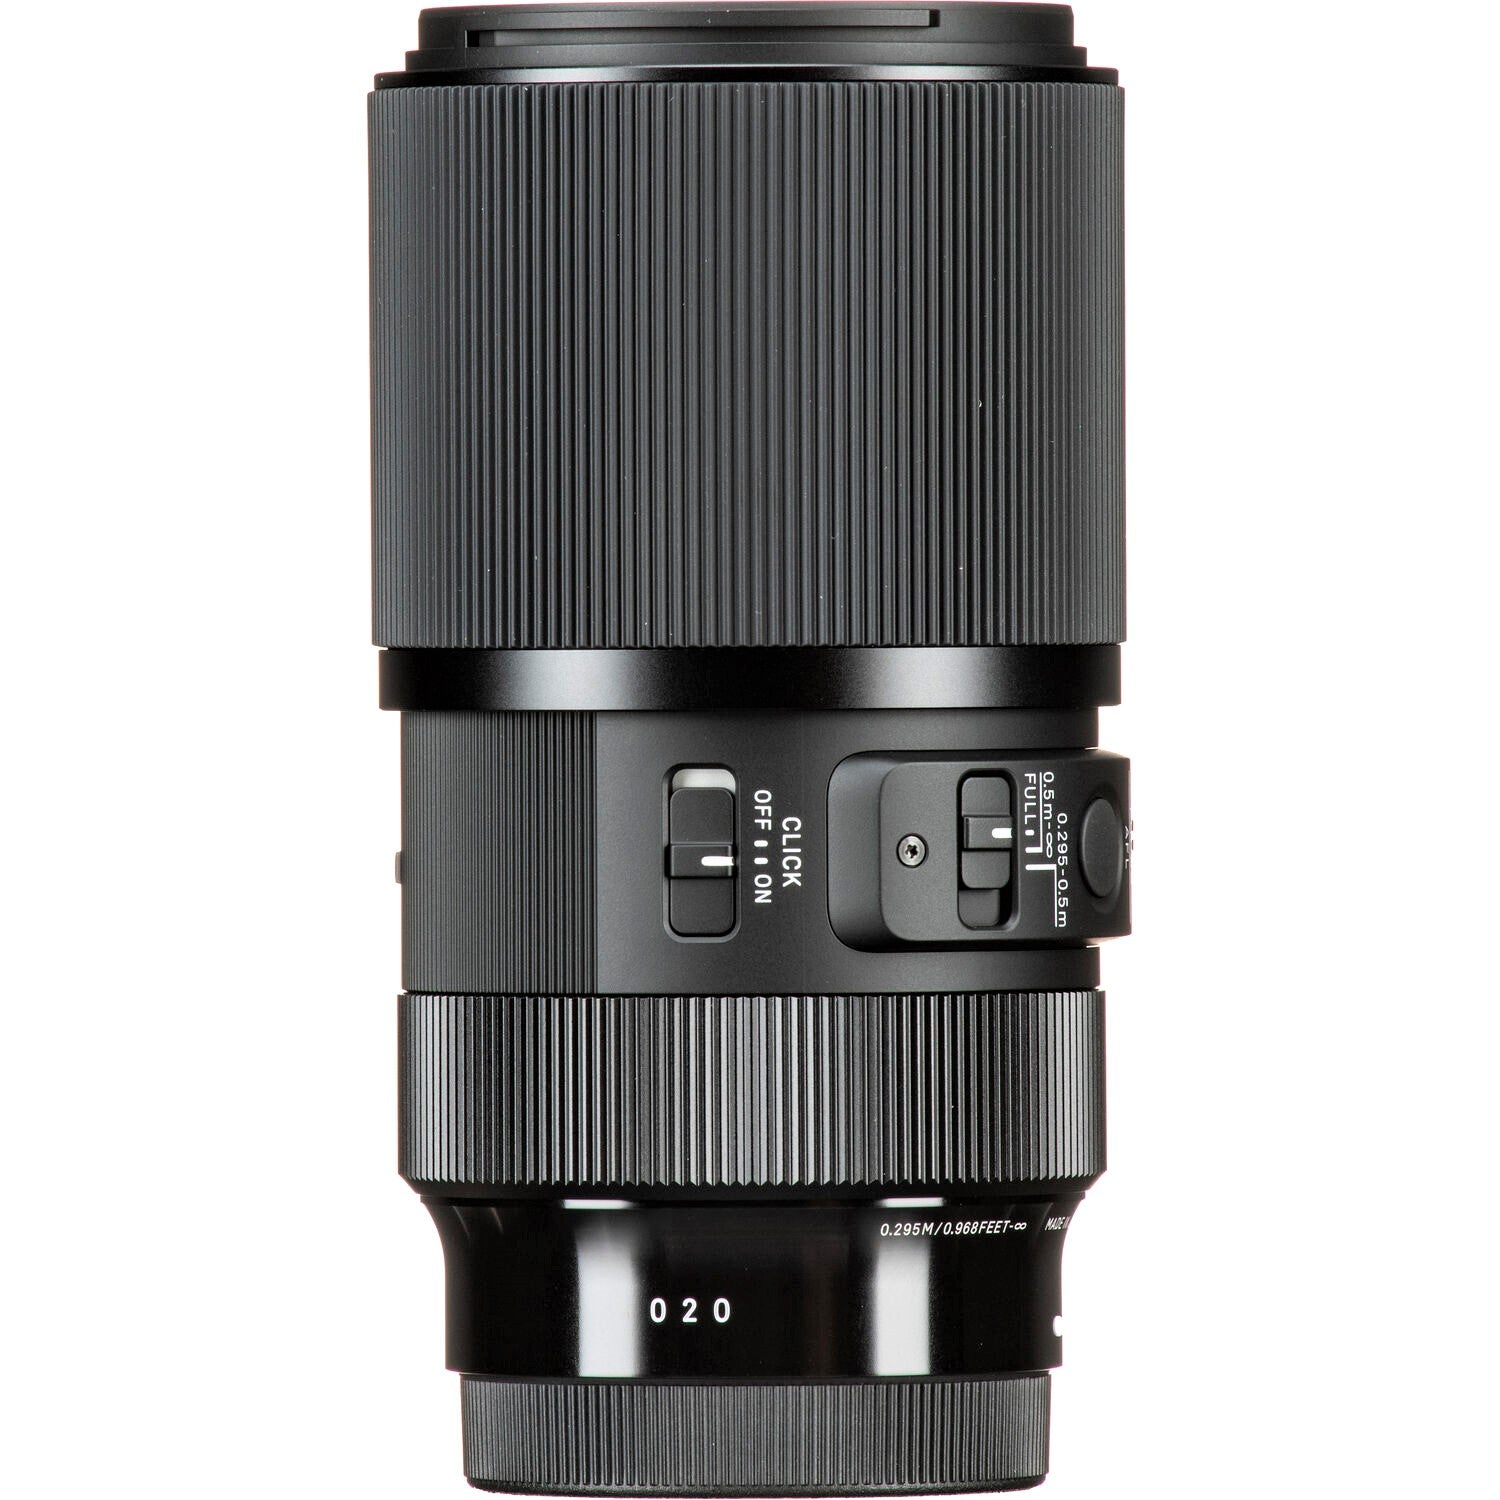 Sigma 105mm F2.8 DG DN Macro Art Lens for Sony E